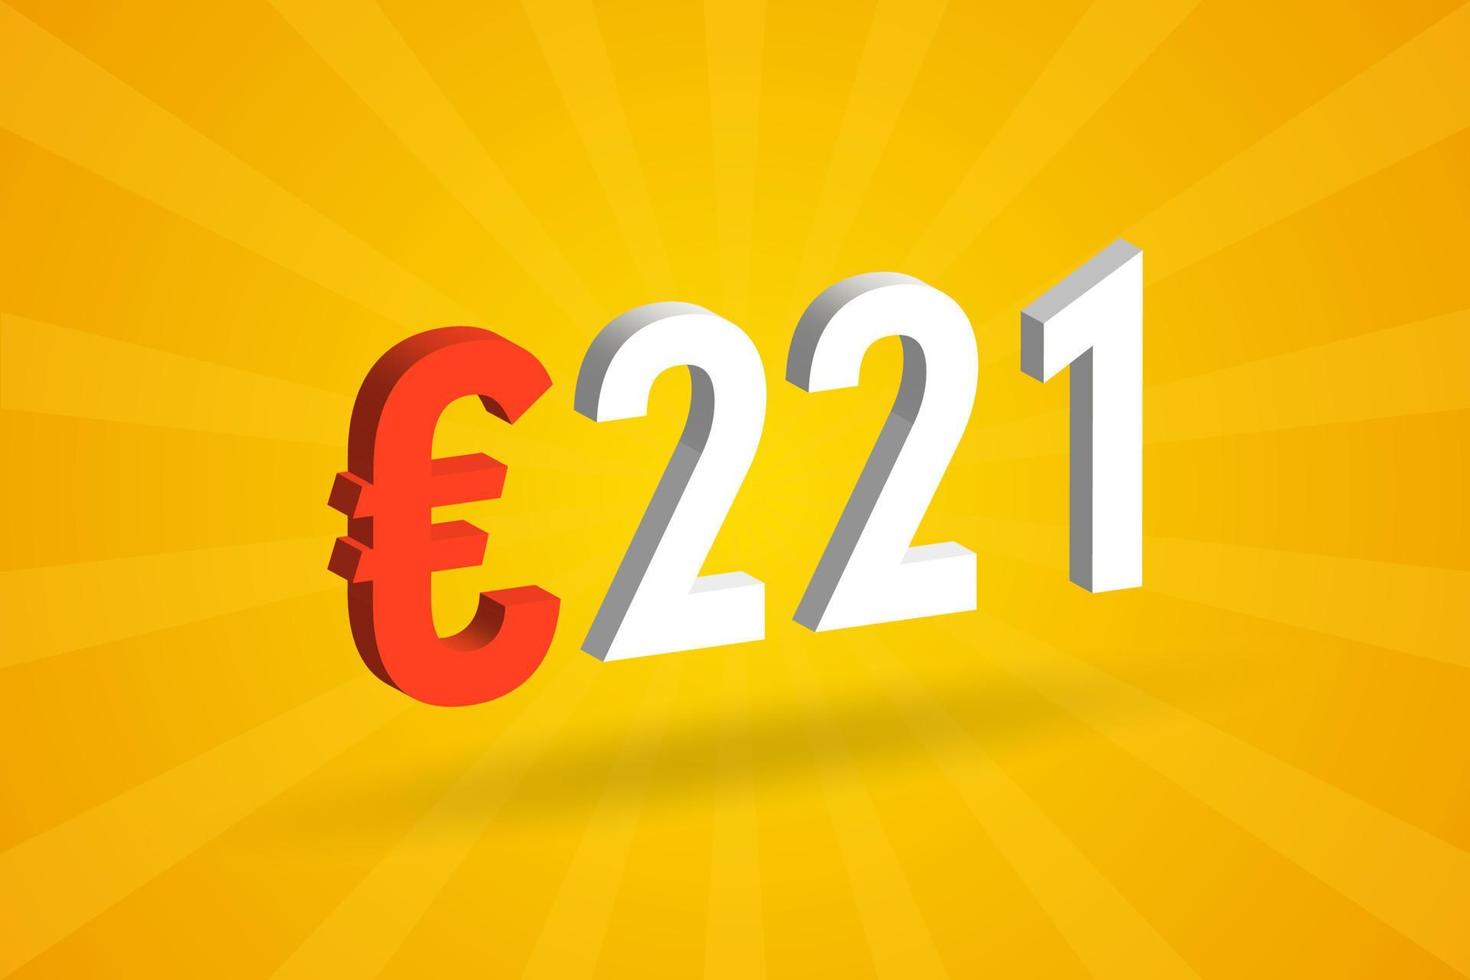 Symbole de texte vectoriel 3d de devise de 221 euros. 3d 221 euro union européenne argent vecteur de stock